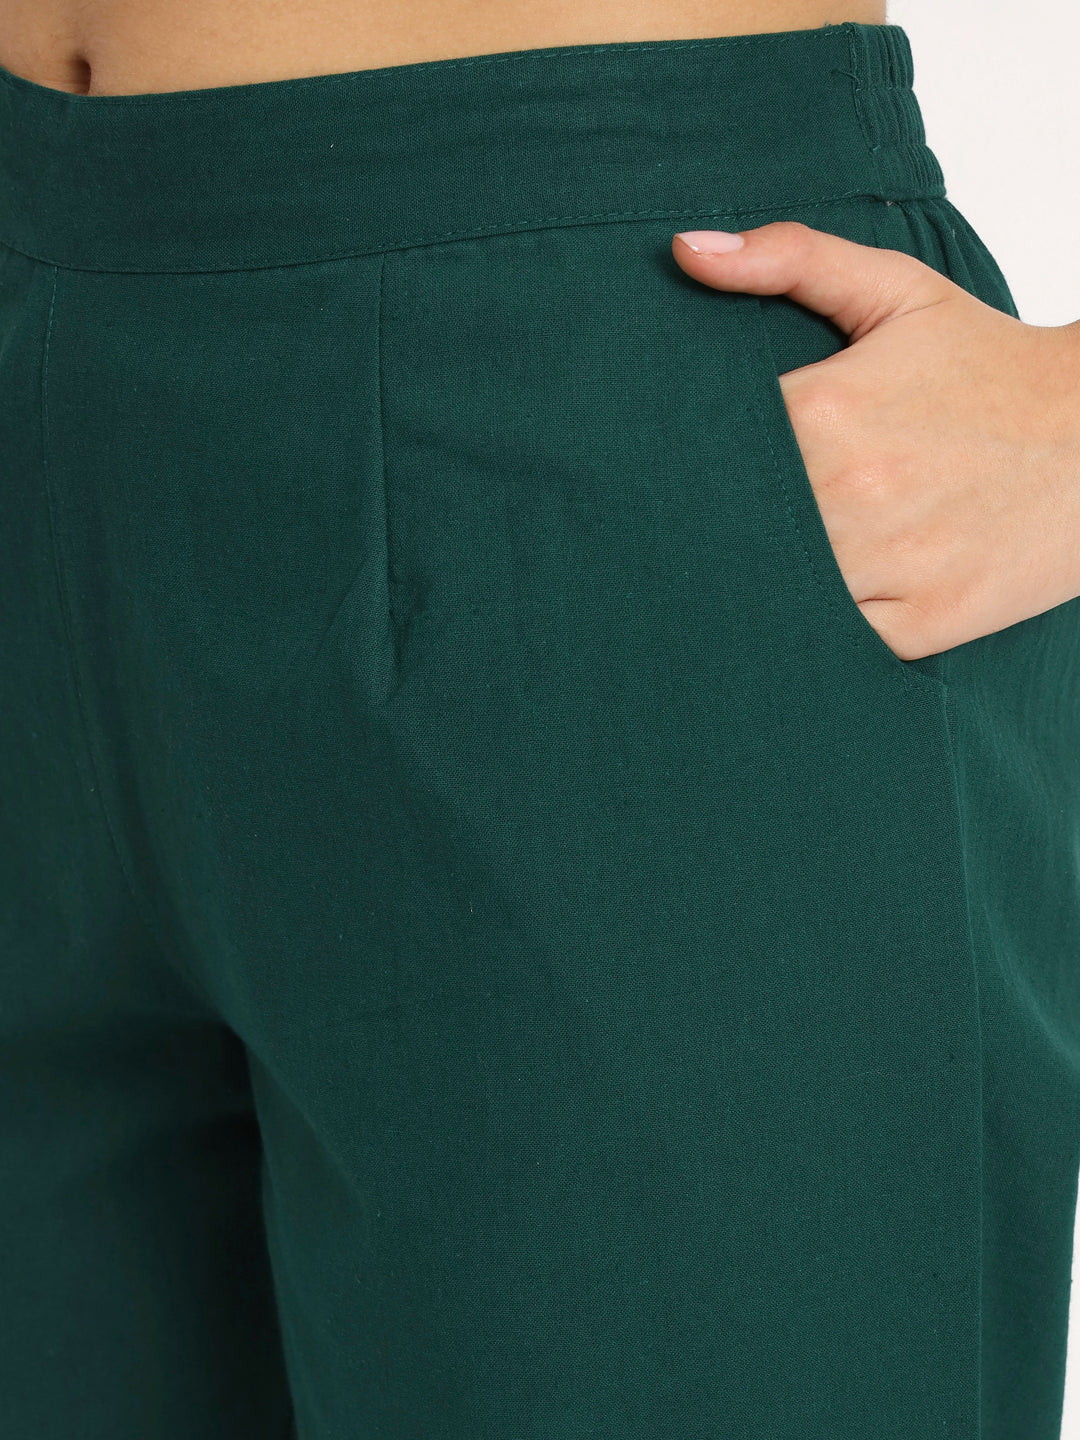 cotton pants for women online